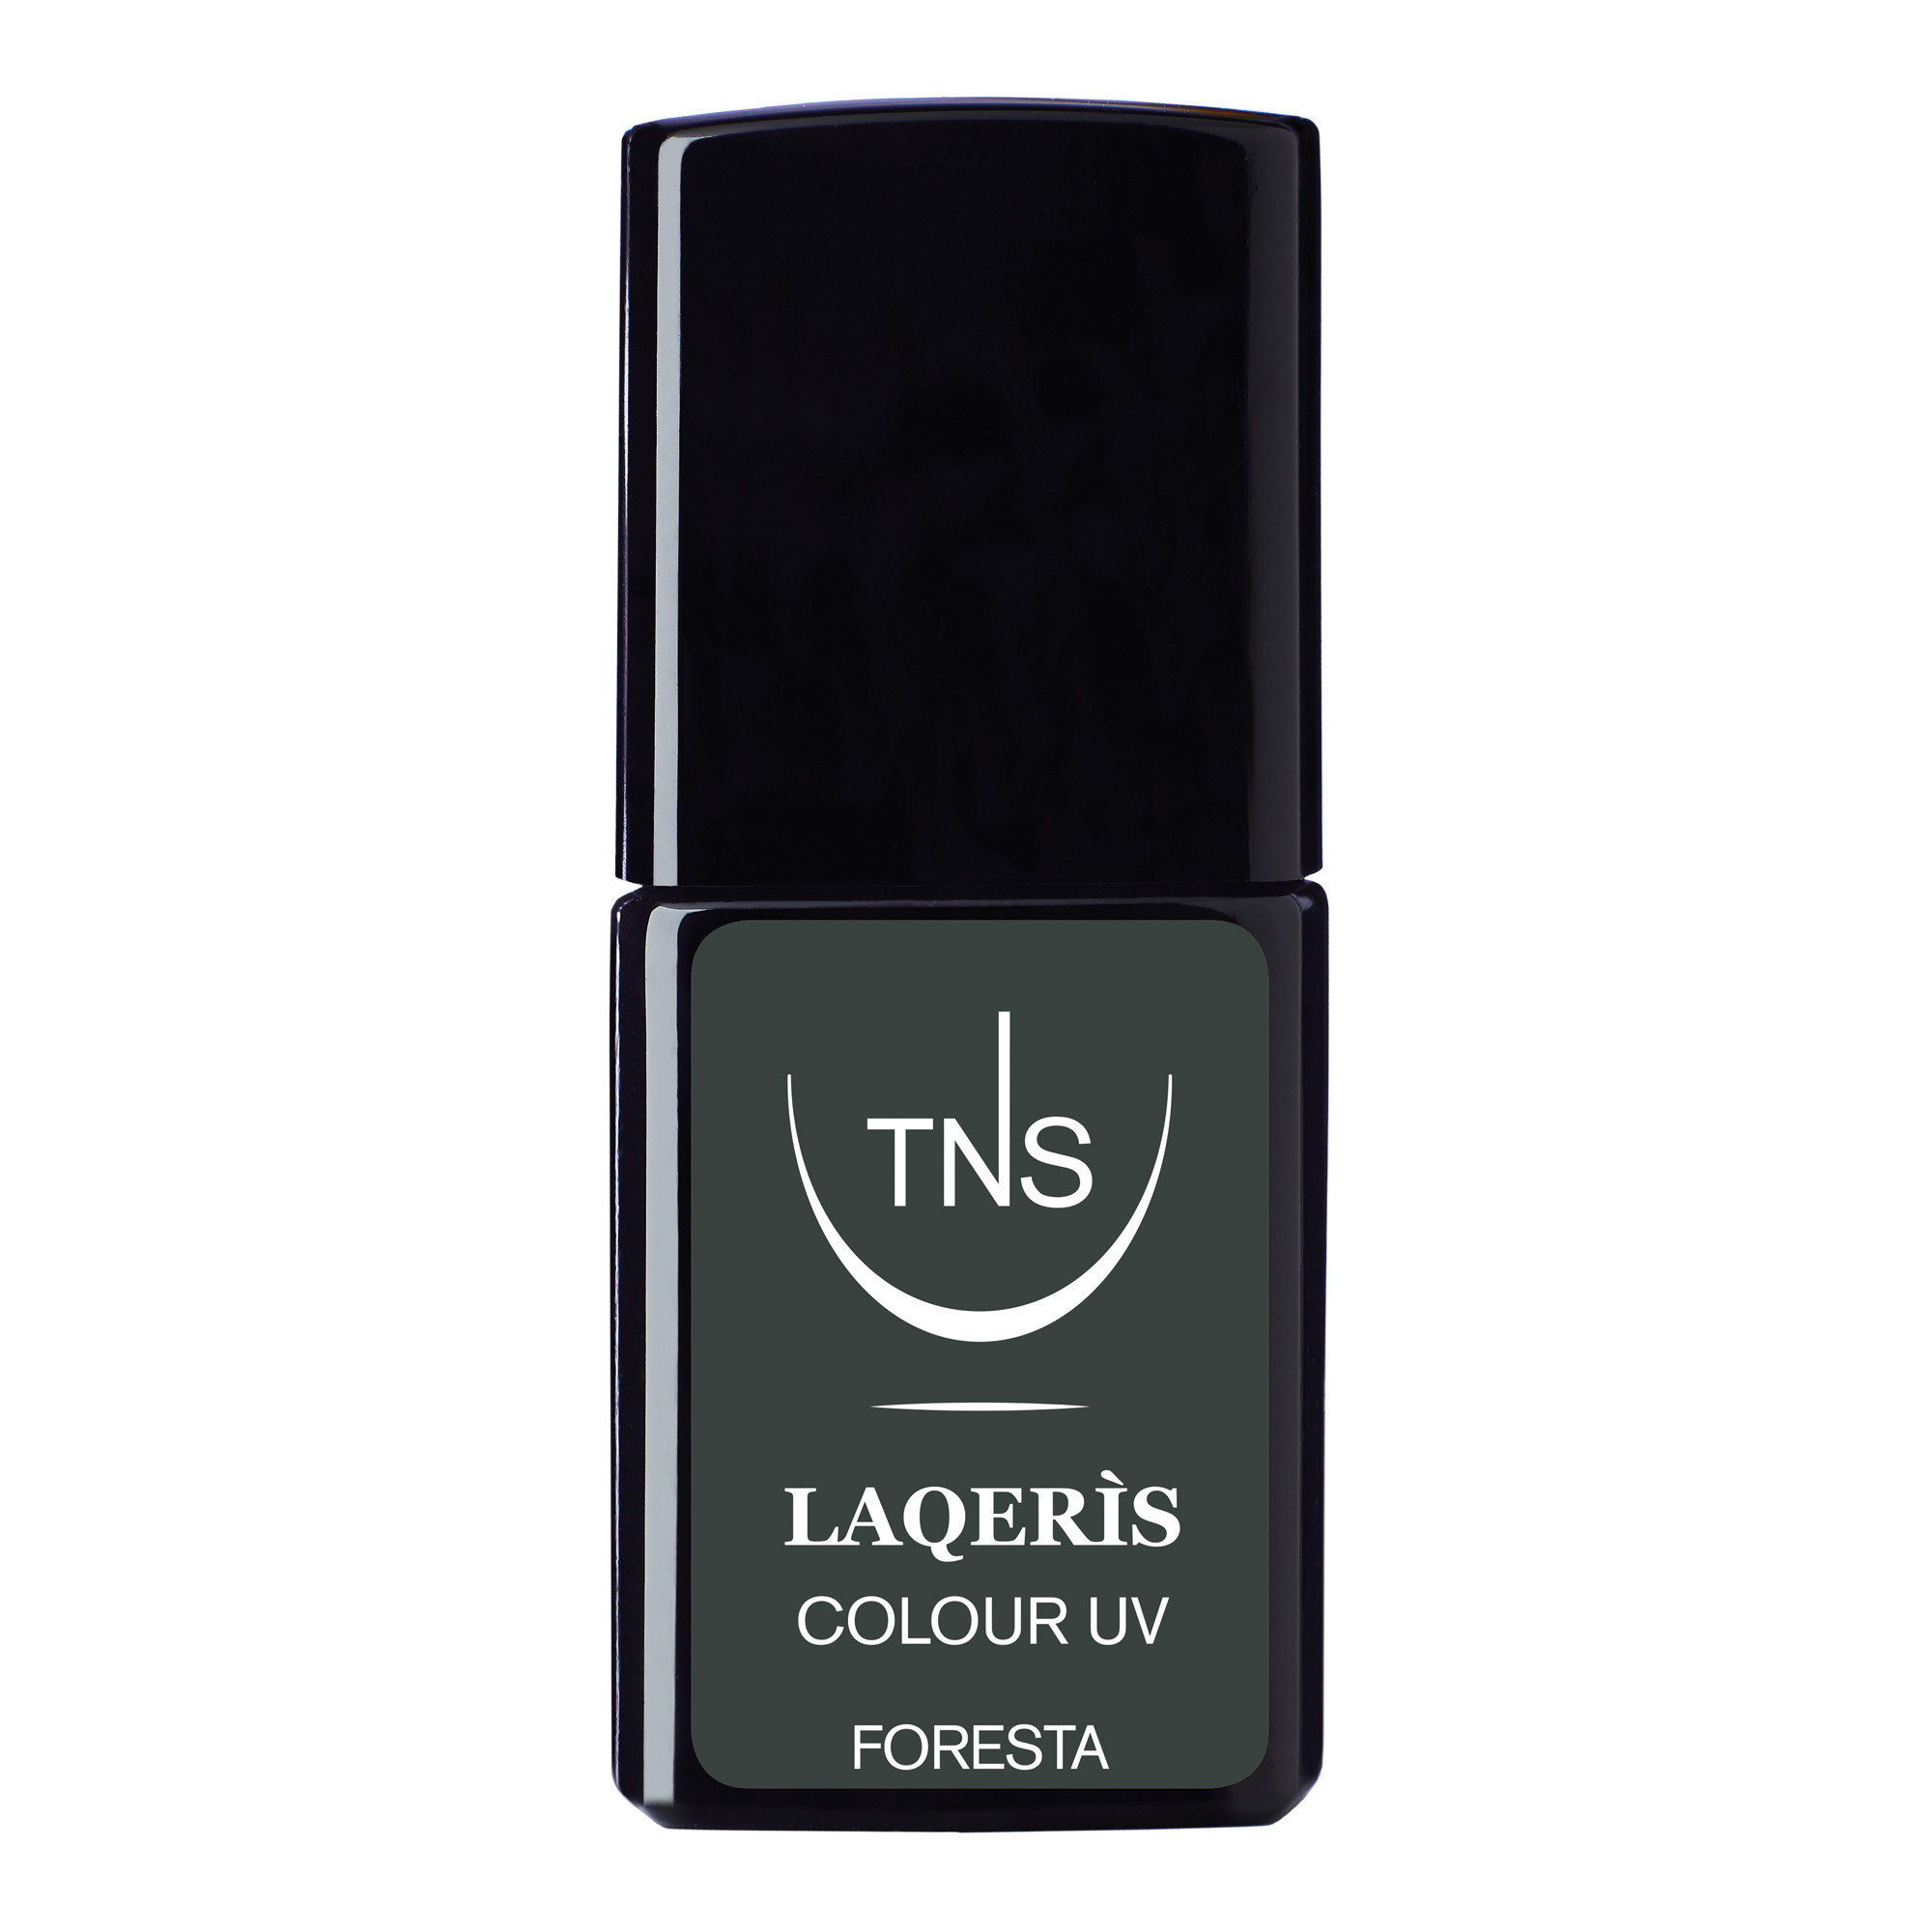 Smalto semipermanente verde scuro Foresta 10 ml Laqerìs TNS